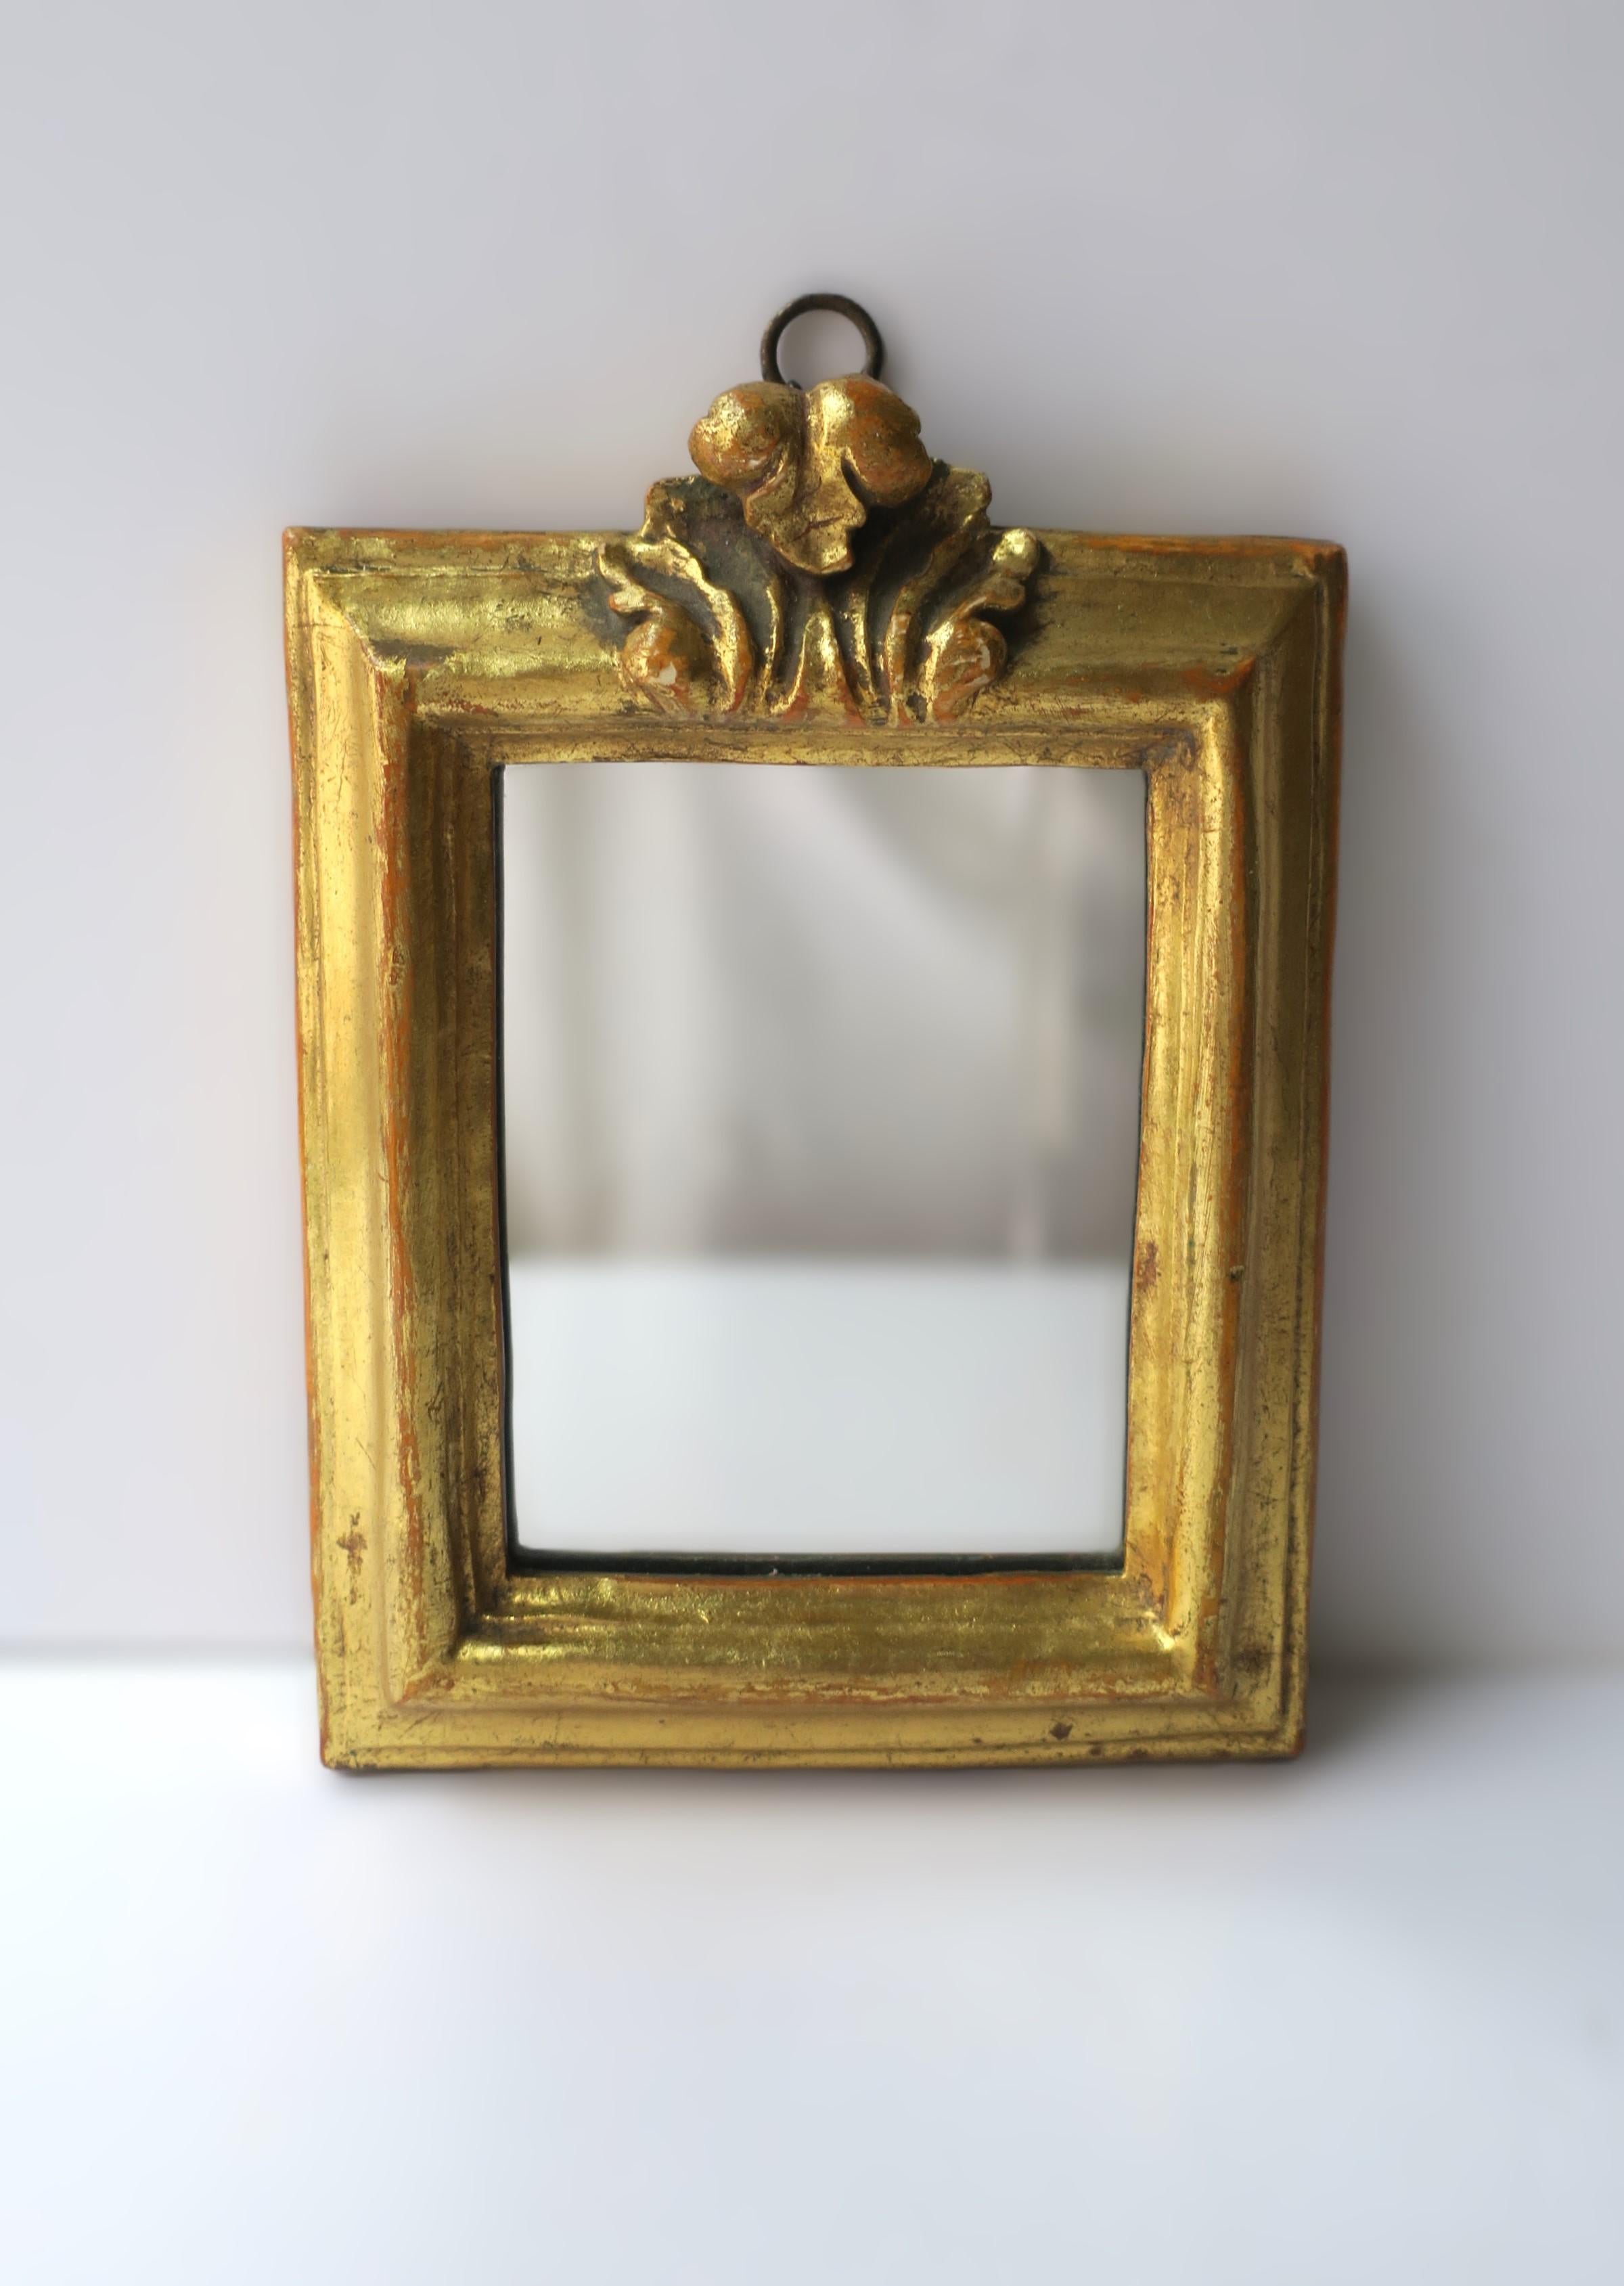 Petit miroir d'appoint mural en bois doré italien de bonne facture, avec un design de feuilles d'acanthe, par Borghese, tel que marqué, vers le début ou le milieu du 20e siècle, Italie. Le miroir est préparé pour être suspendu à l'aide d'une boucle